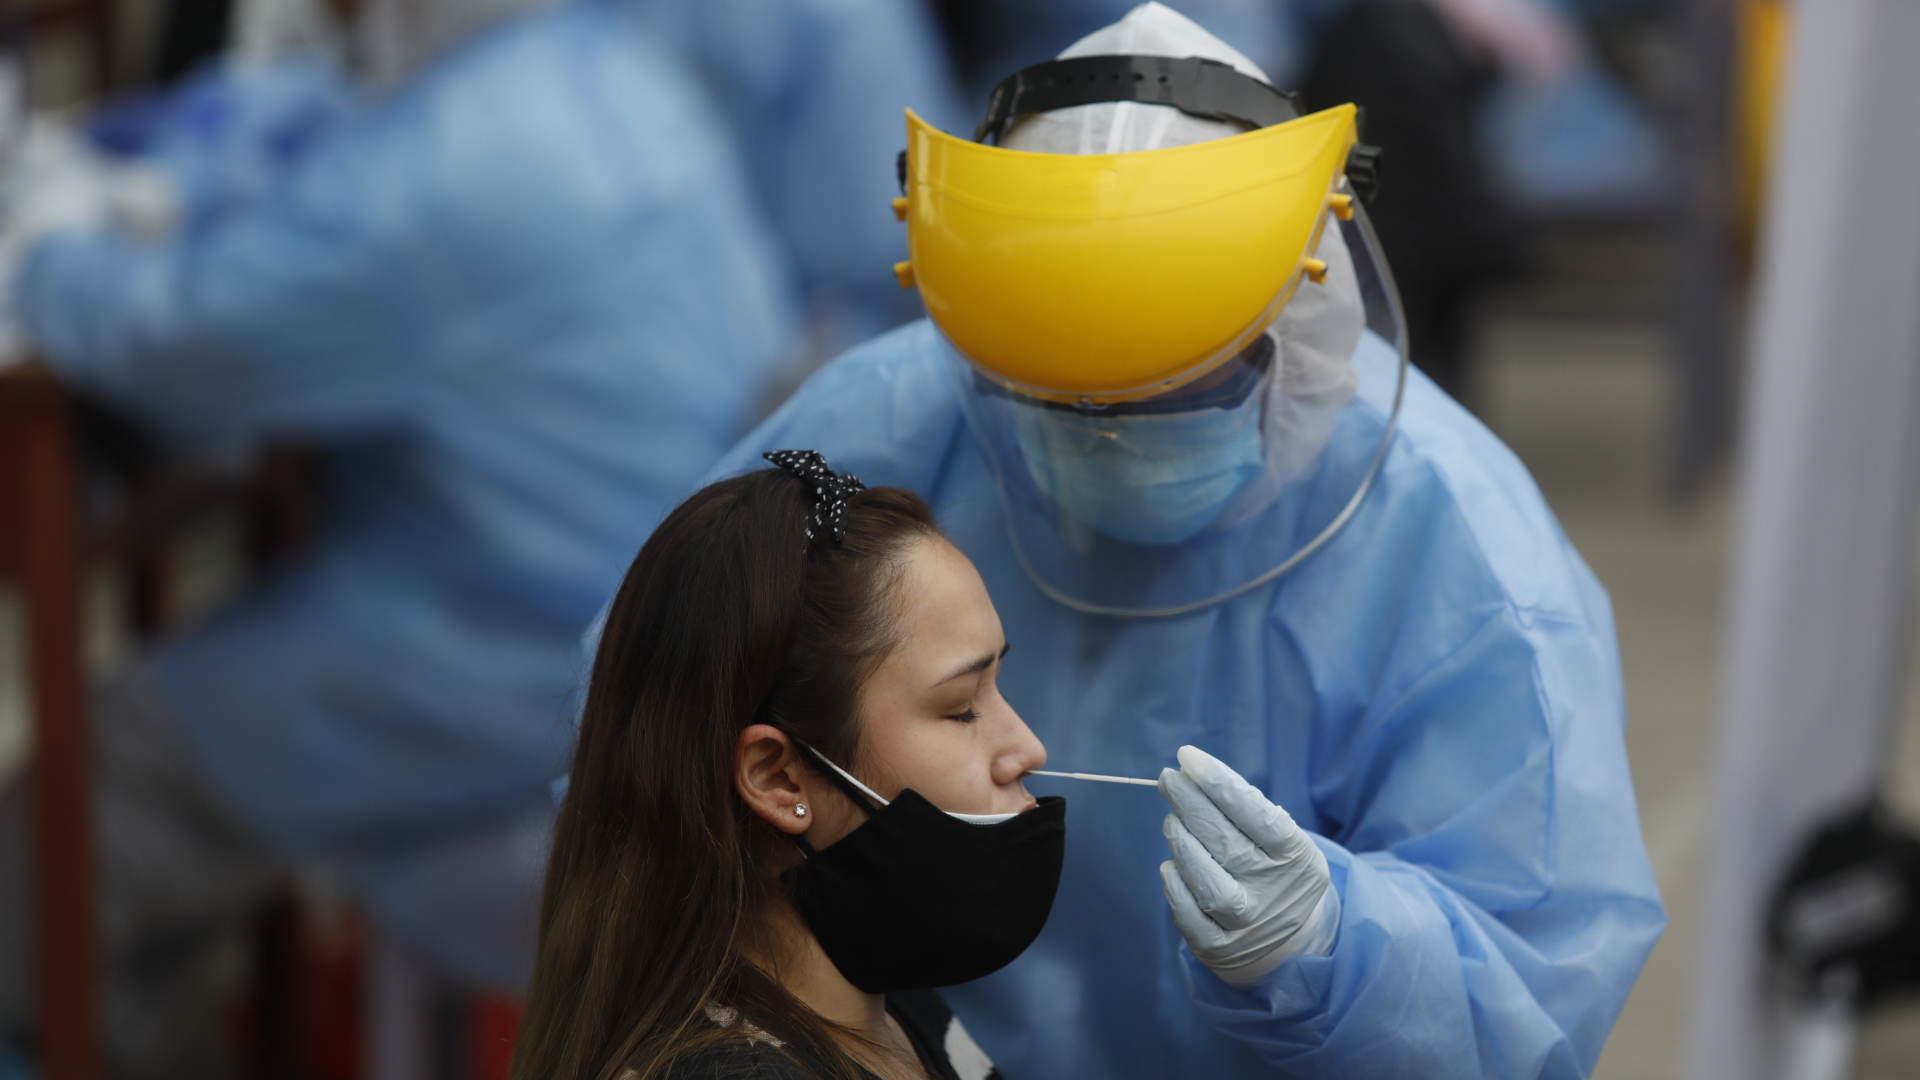 Ein medizinischer Mitarbeiter in Schutzkleidung nimmt einen Nasenabstrich bei einer Patientin, um sie auf das Coronavirus zu testen.